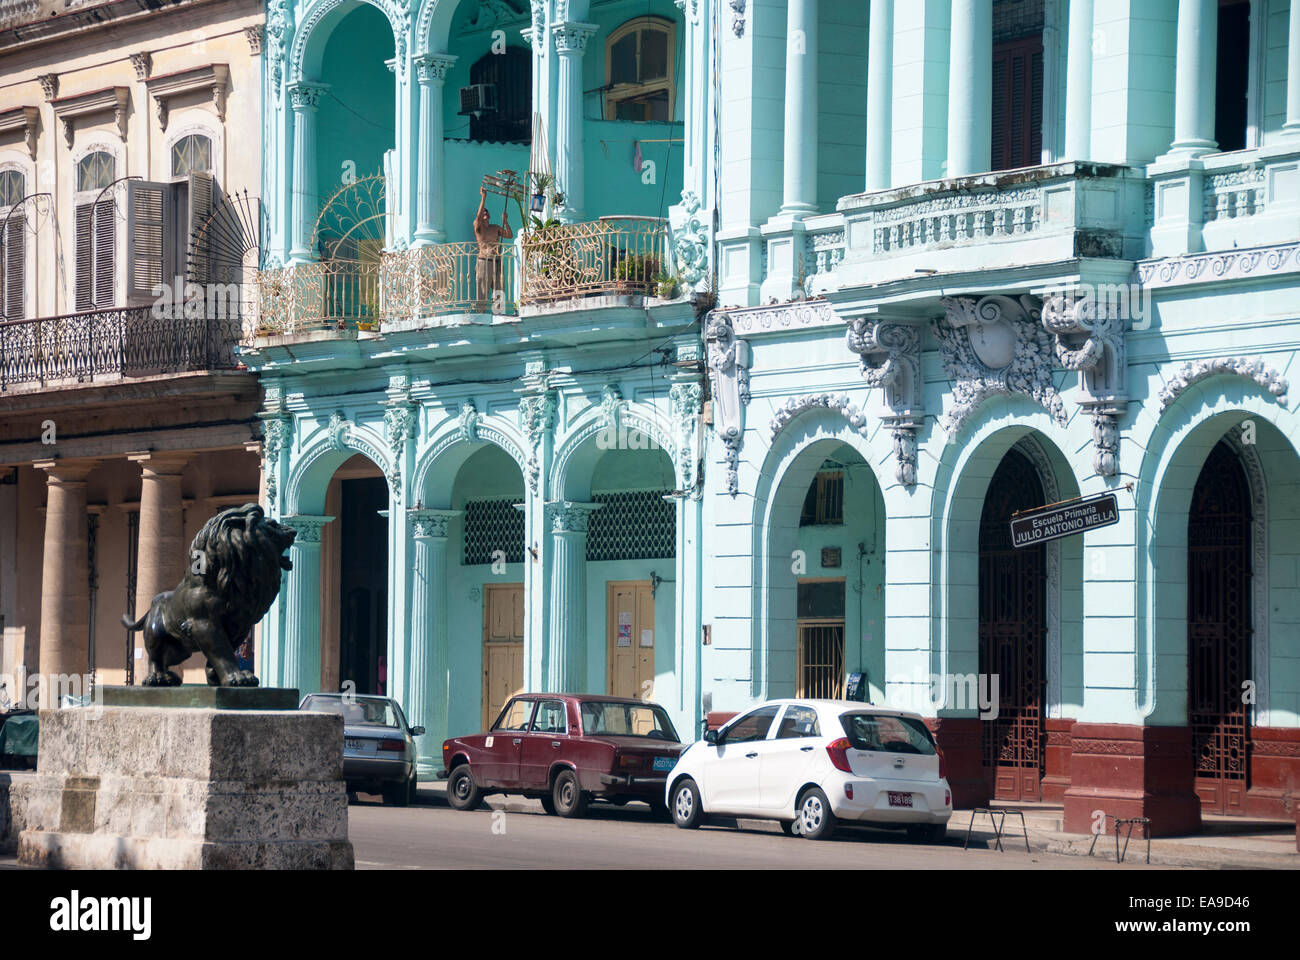 Une école primaire fait partie de la couleur des exemples d'architecture coloniale espagnole sur le Prado (Paseo de Marti) à La Havane Cuba Banque D'Images